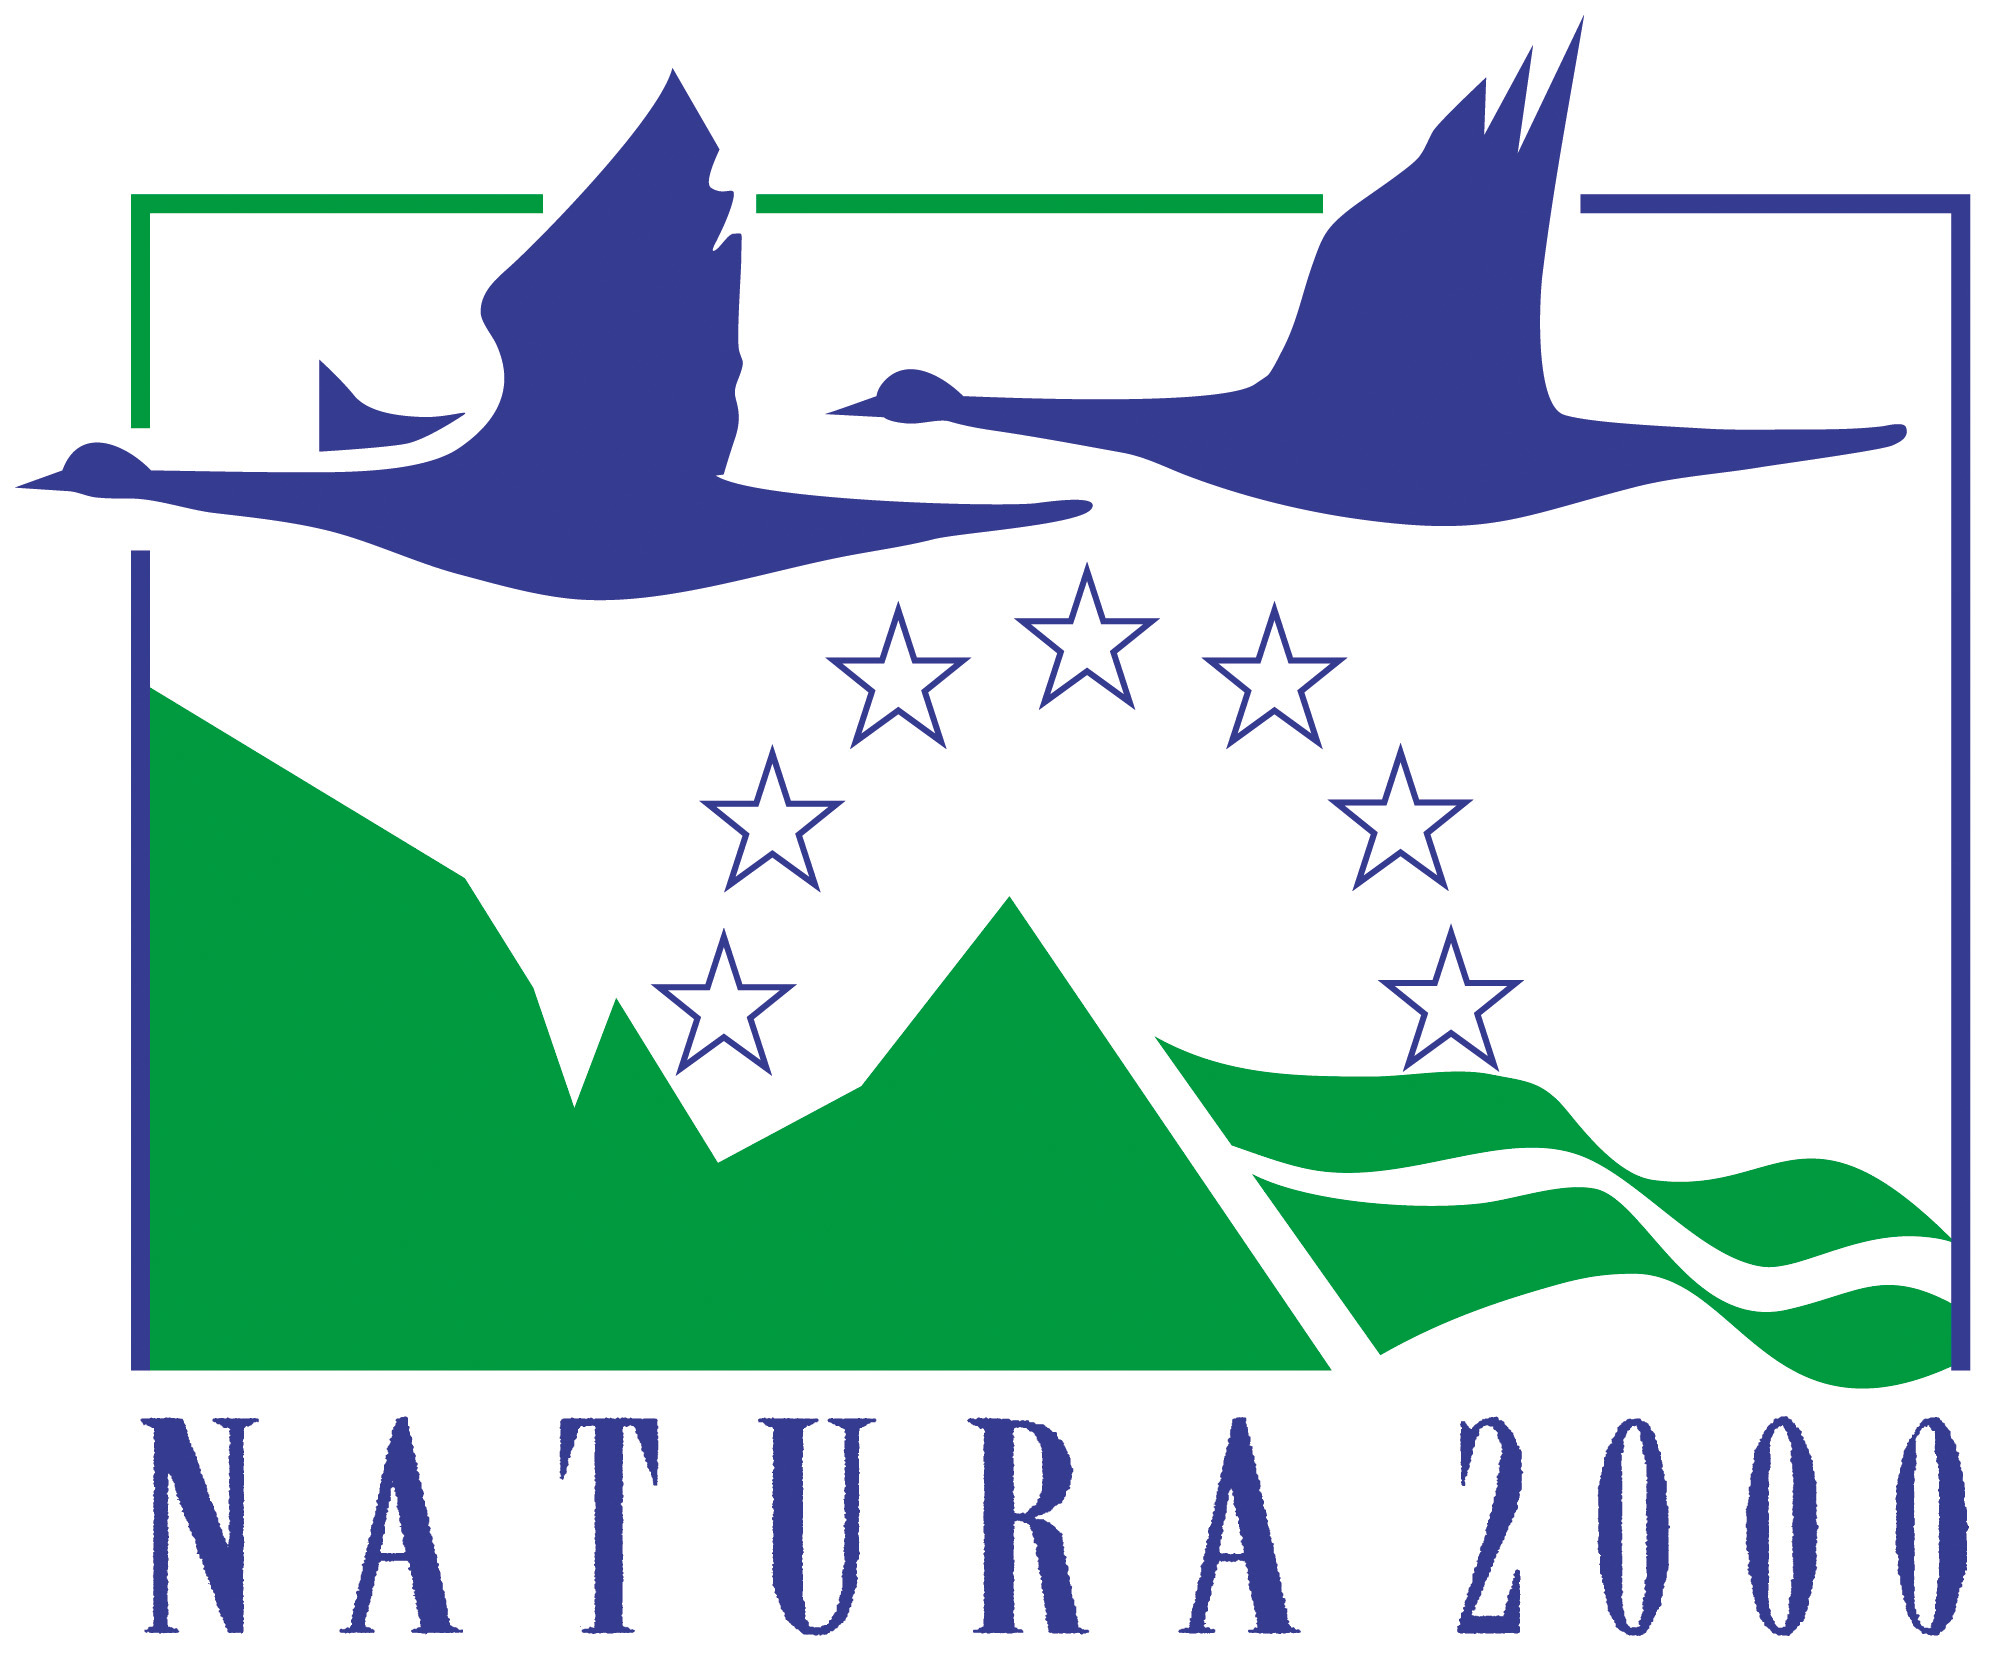 Lillakad linnud lendamas, tiivad ülespoole, idast läände. Nende all näha rohelised mäetipud. Logo keskel poolringjalt läbipaistvad ja halli värvi Euroopa liidu tähekesed. All kirjas trükitähtedega Natura 2000